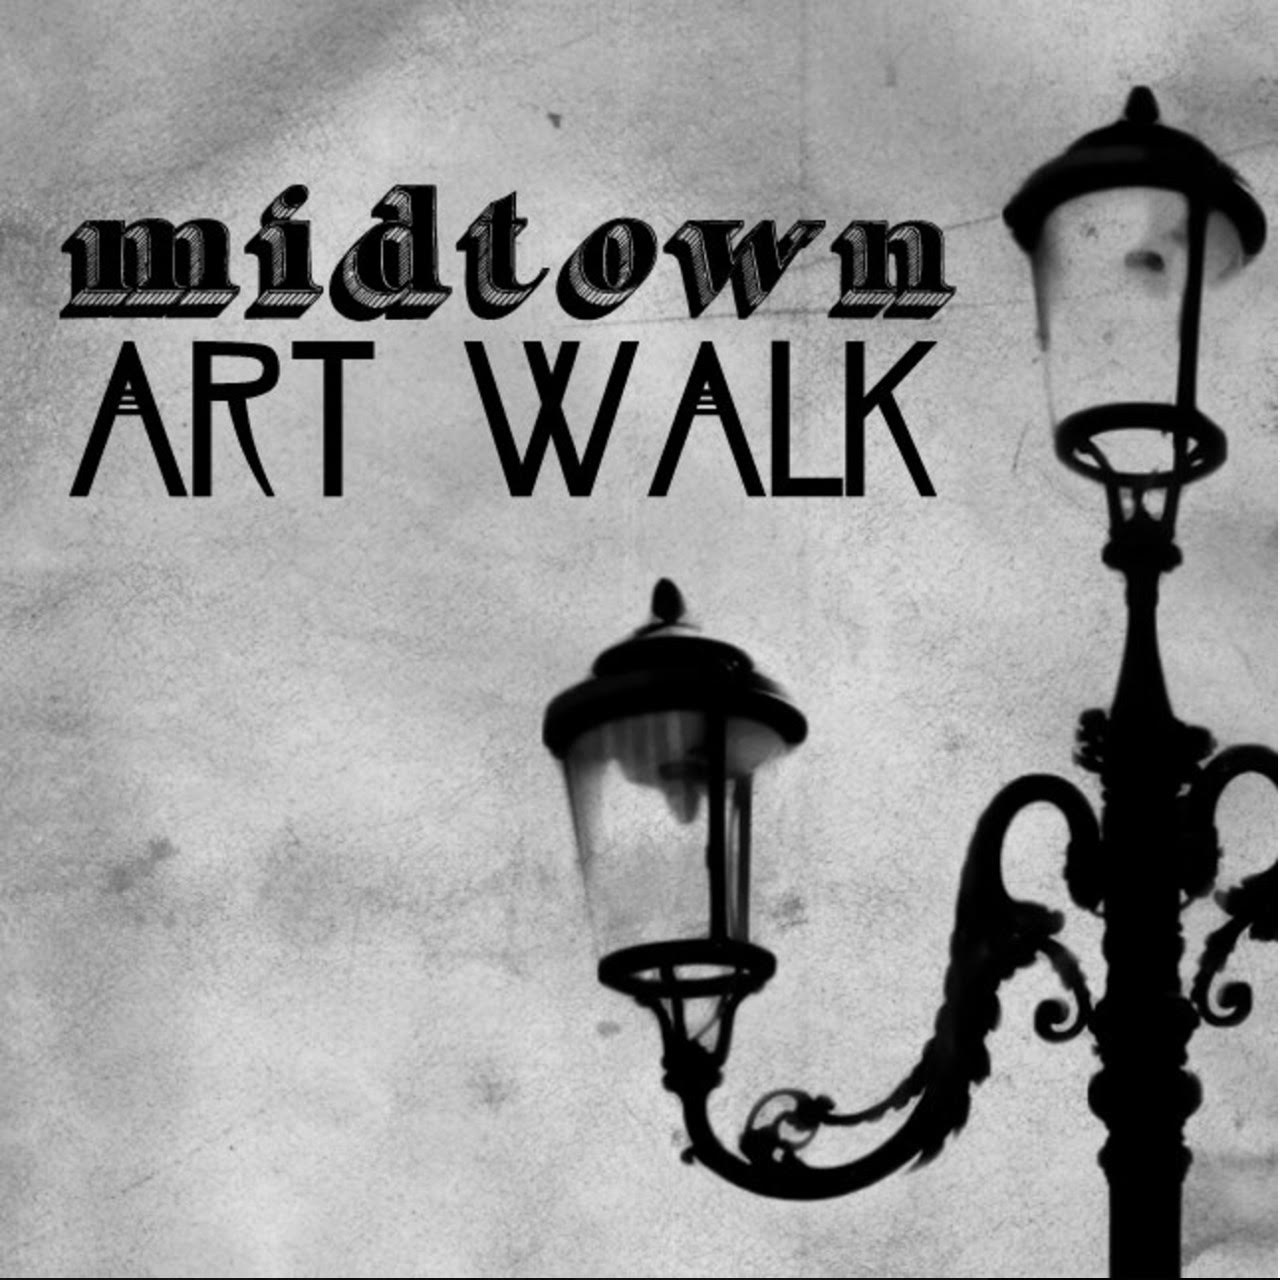 midtown art walk art town reno branding type logo